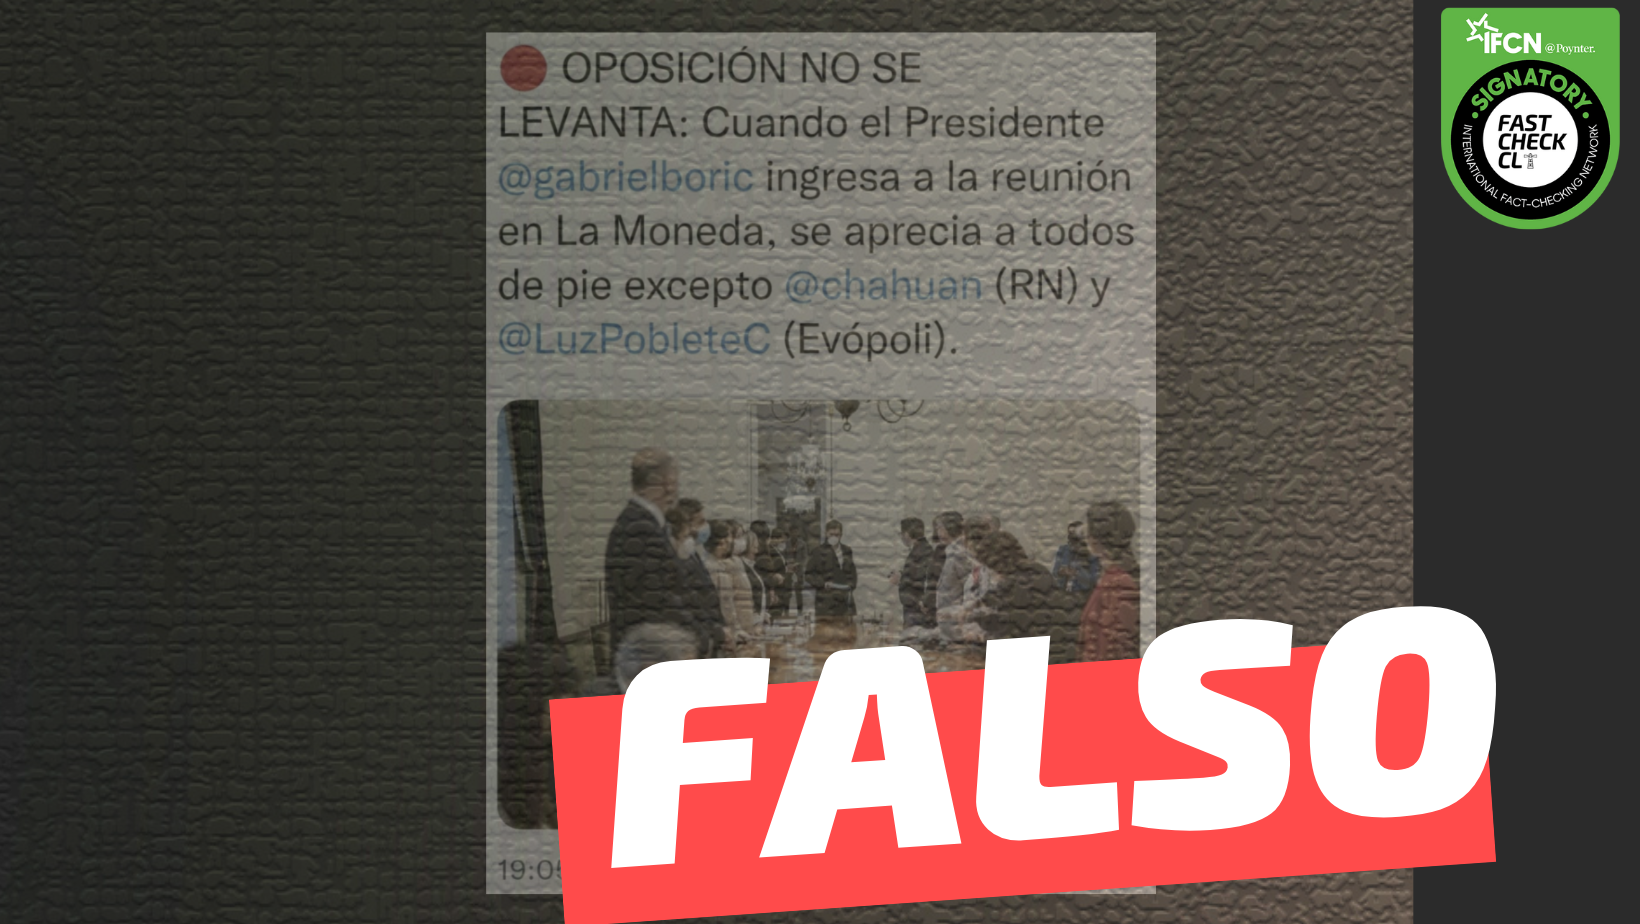 You are currently viewing Oposición no se levantó cuando el Presidente Gabriel Boric ingresó a la reunión en La Moneda: #Falso